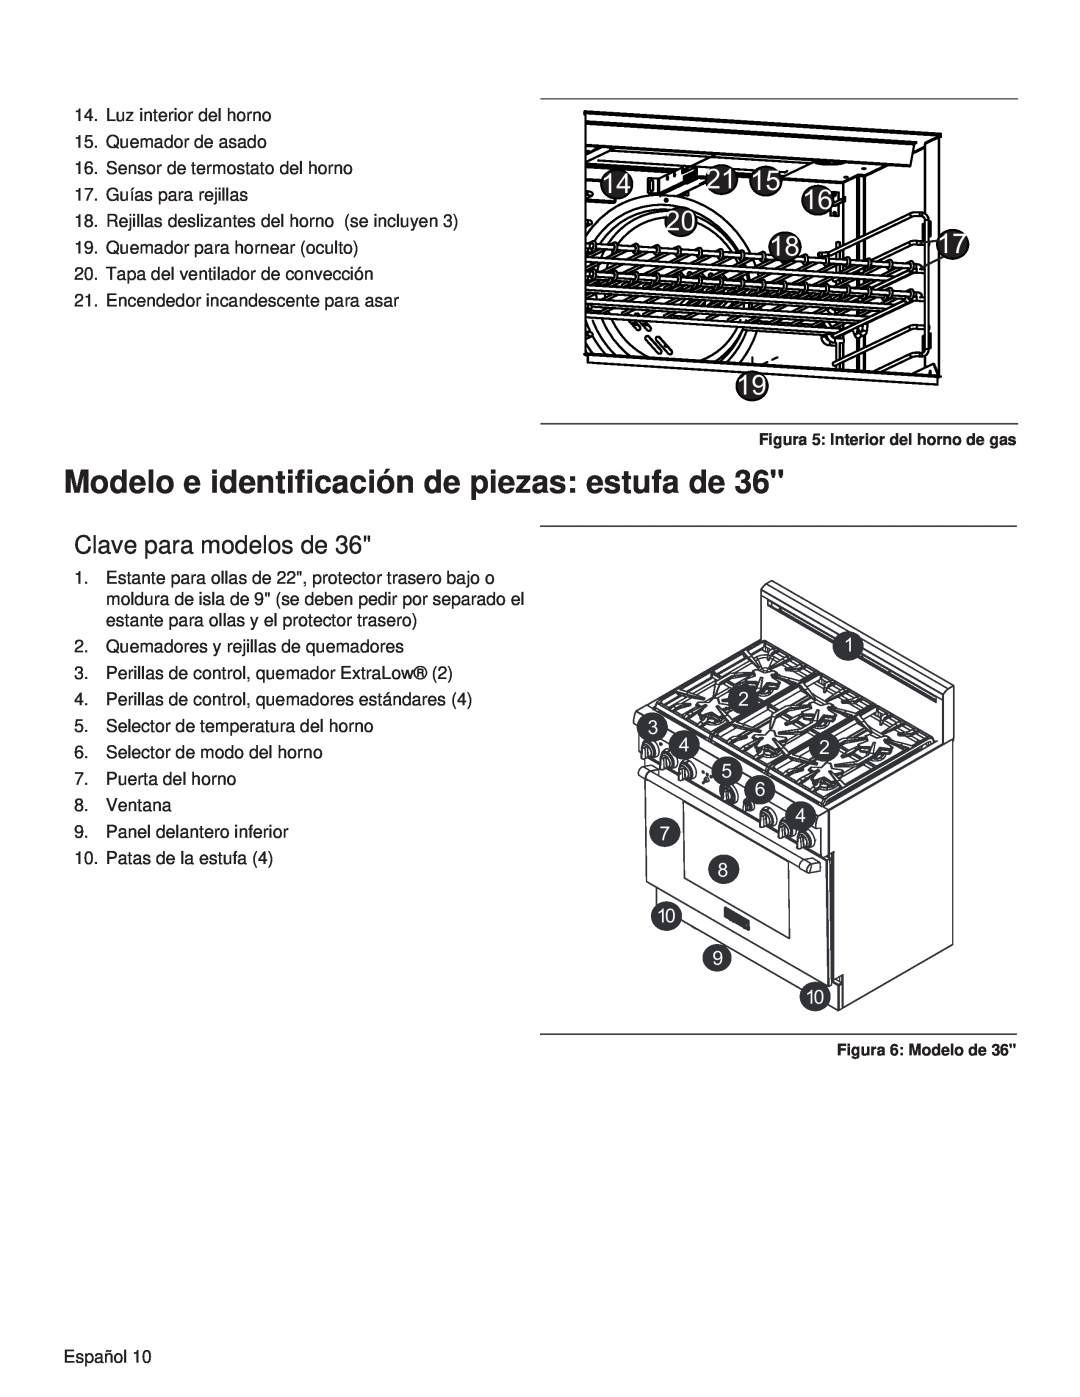 Thermador PRL36 Modelo e identificación de piezas estufa de, Clave para modelos de, Figura 5 Interior del horno de gas 